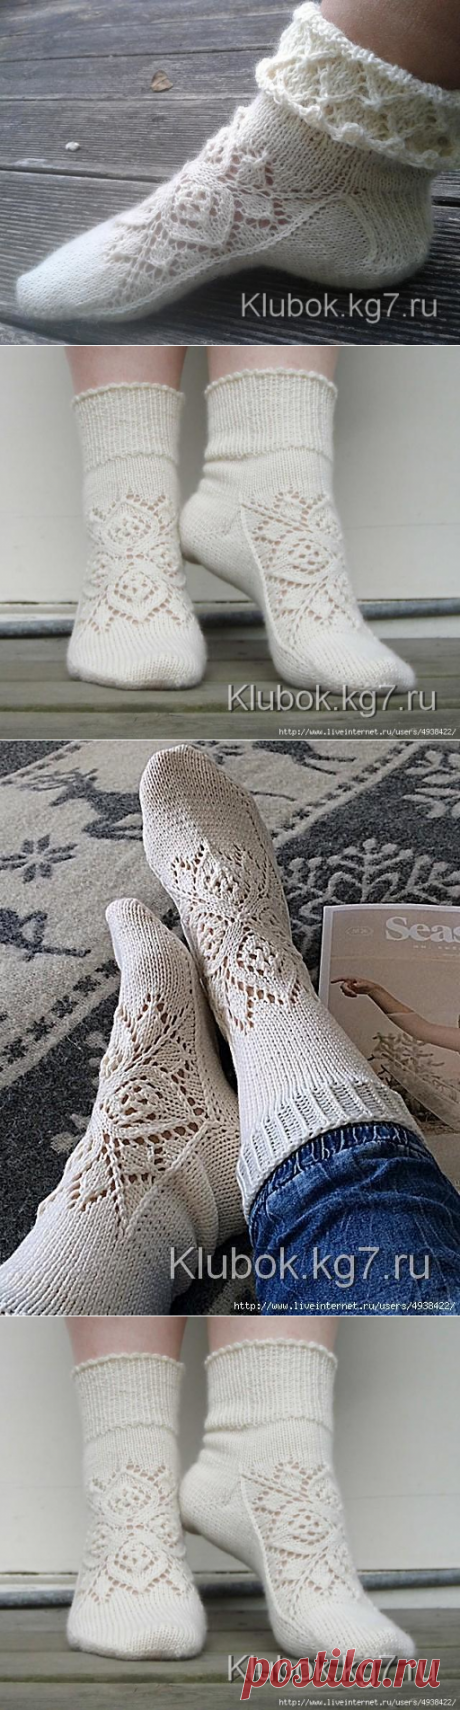 Ажурные носки спицами с узором от центра (Вязание спицами) | Журнал Вдохновение Рукодельницы